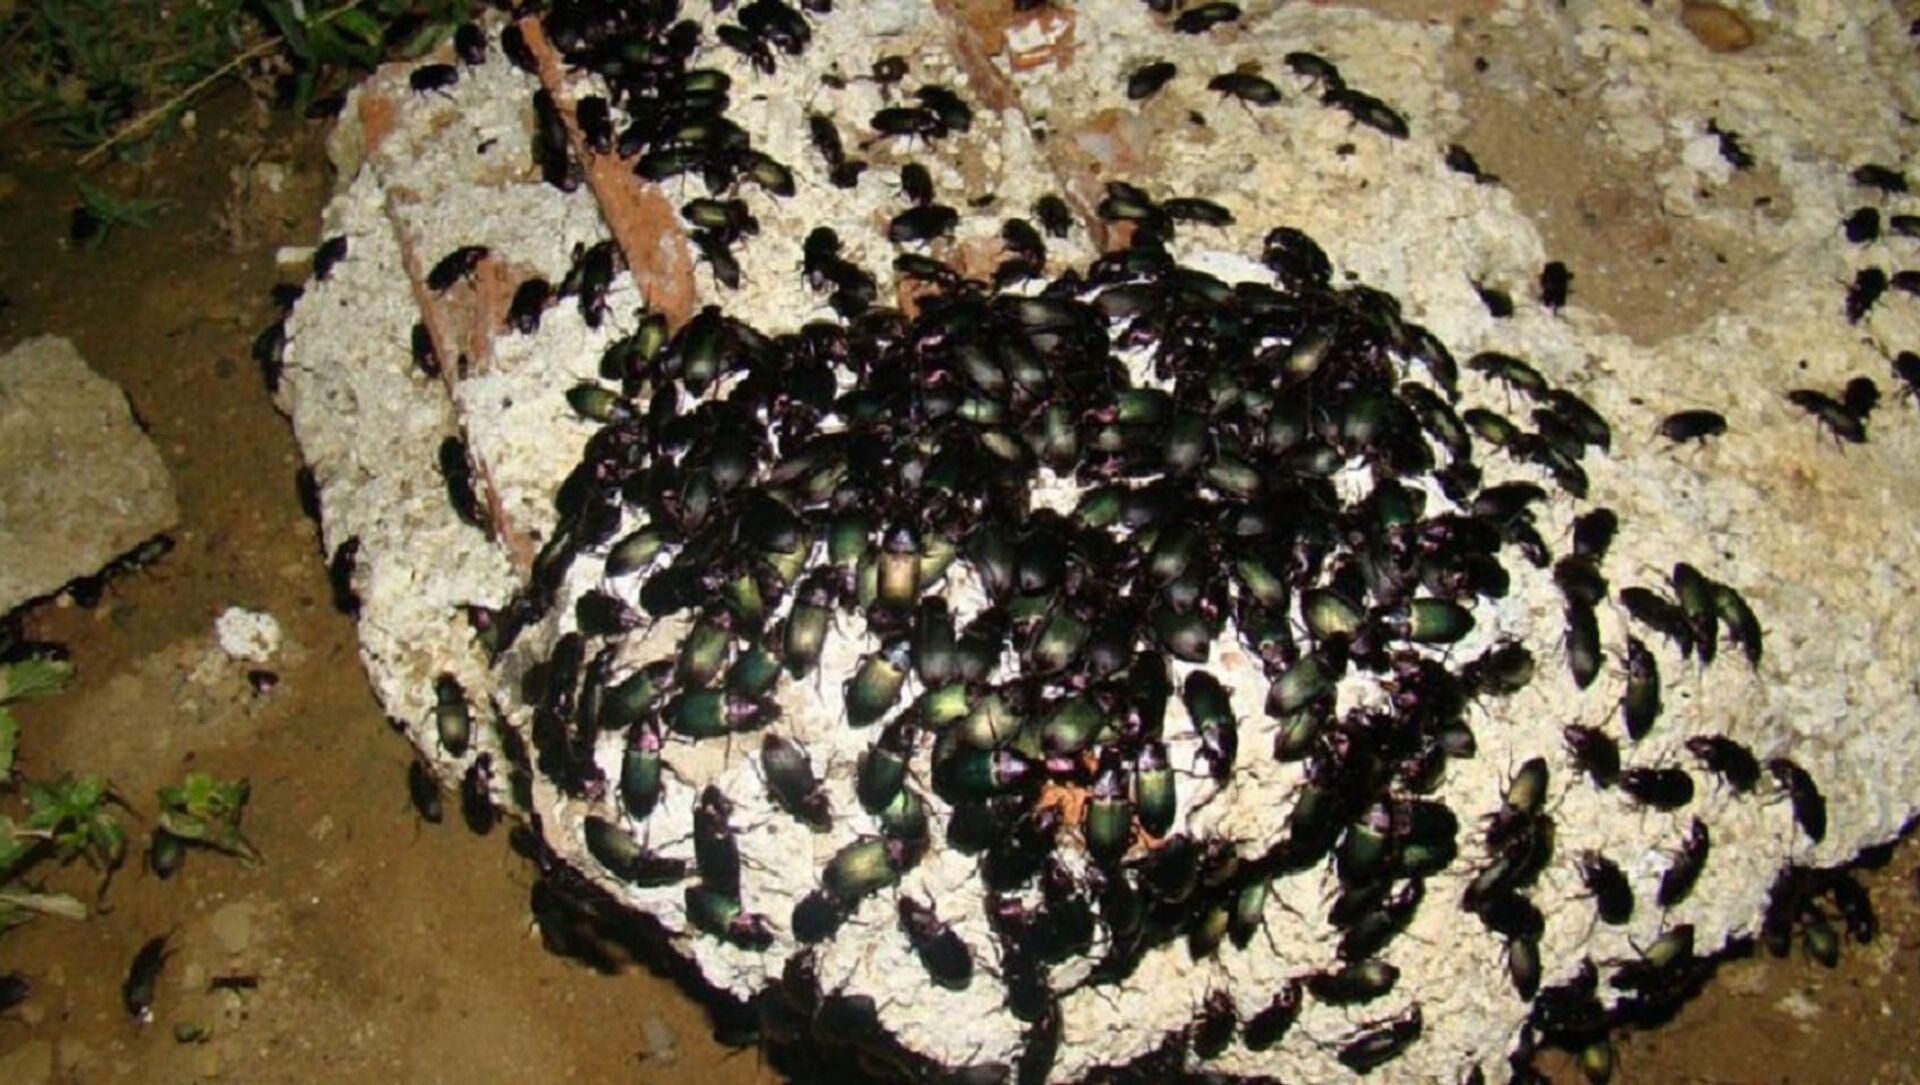 Iaiá-de-cintura, o besouro que vive enterrado em Minas Gerais e na Bahia -  Instituto Butantan